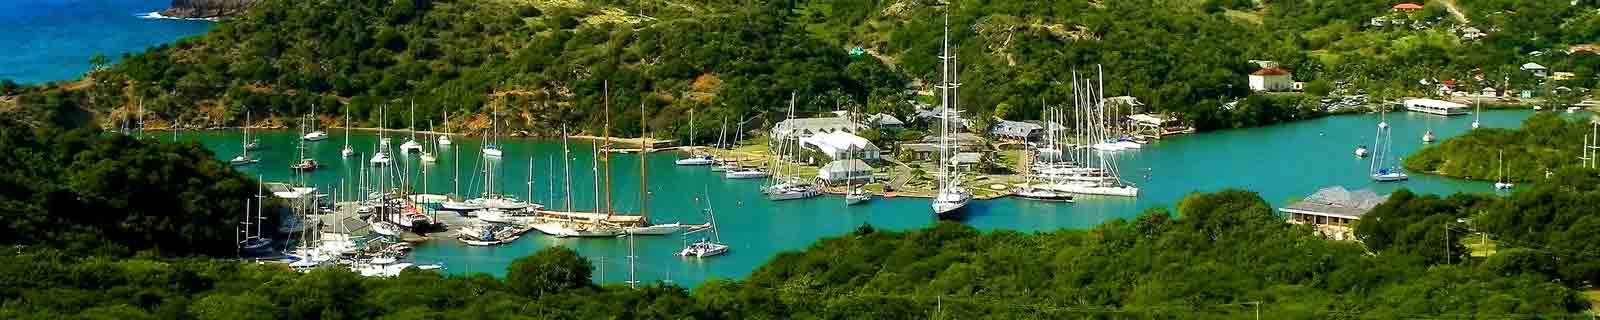 Panoramic photo of the nelson's dockyard in Antigua, St John's cruise port